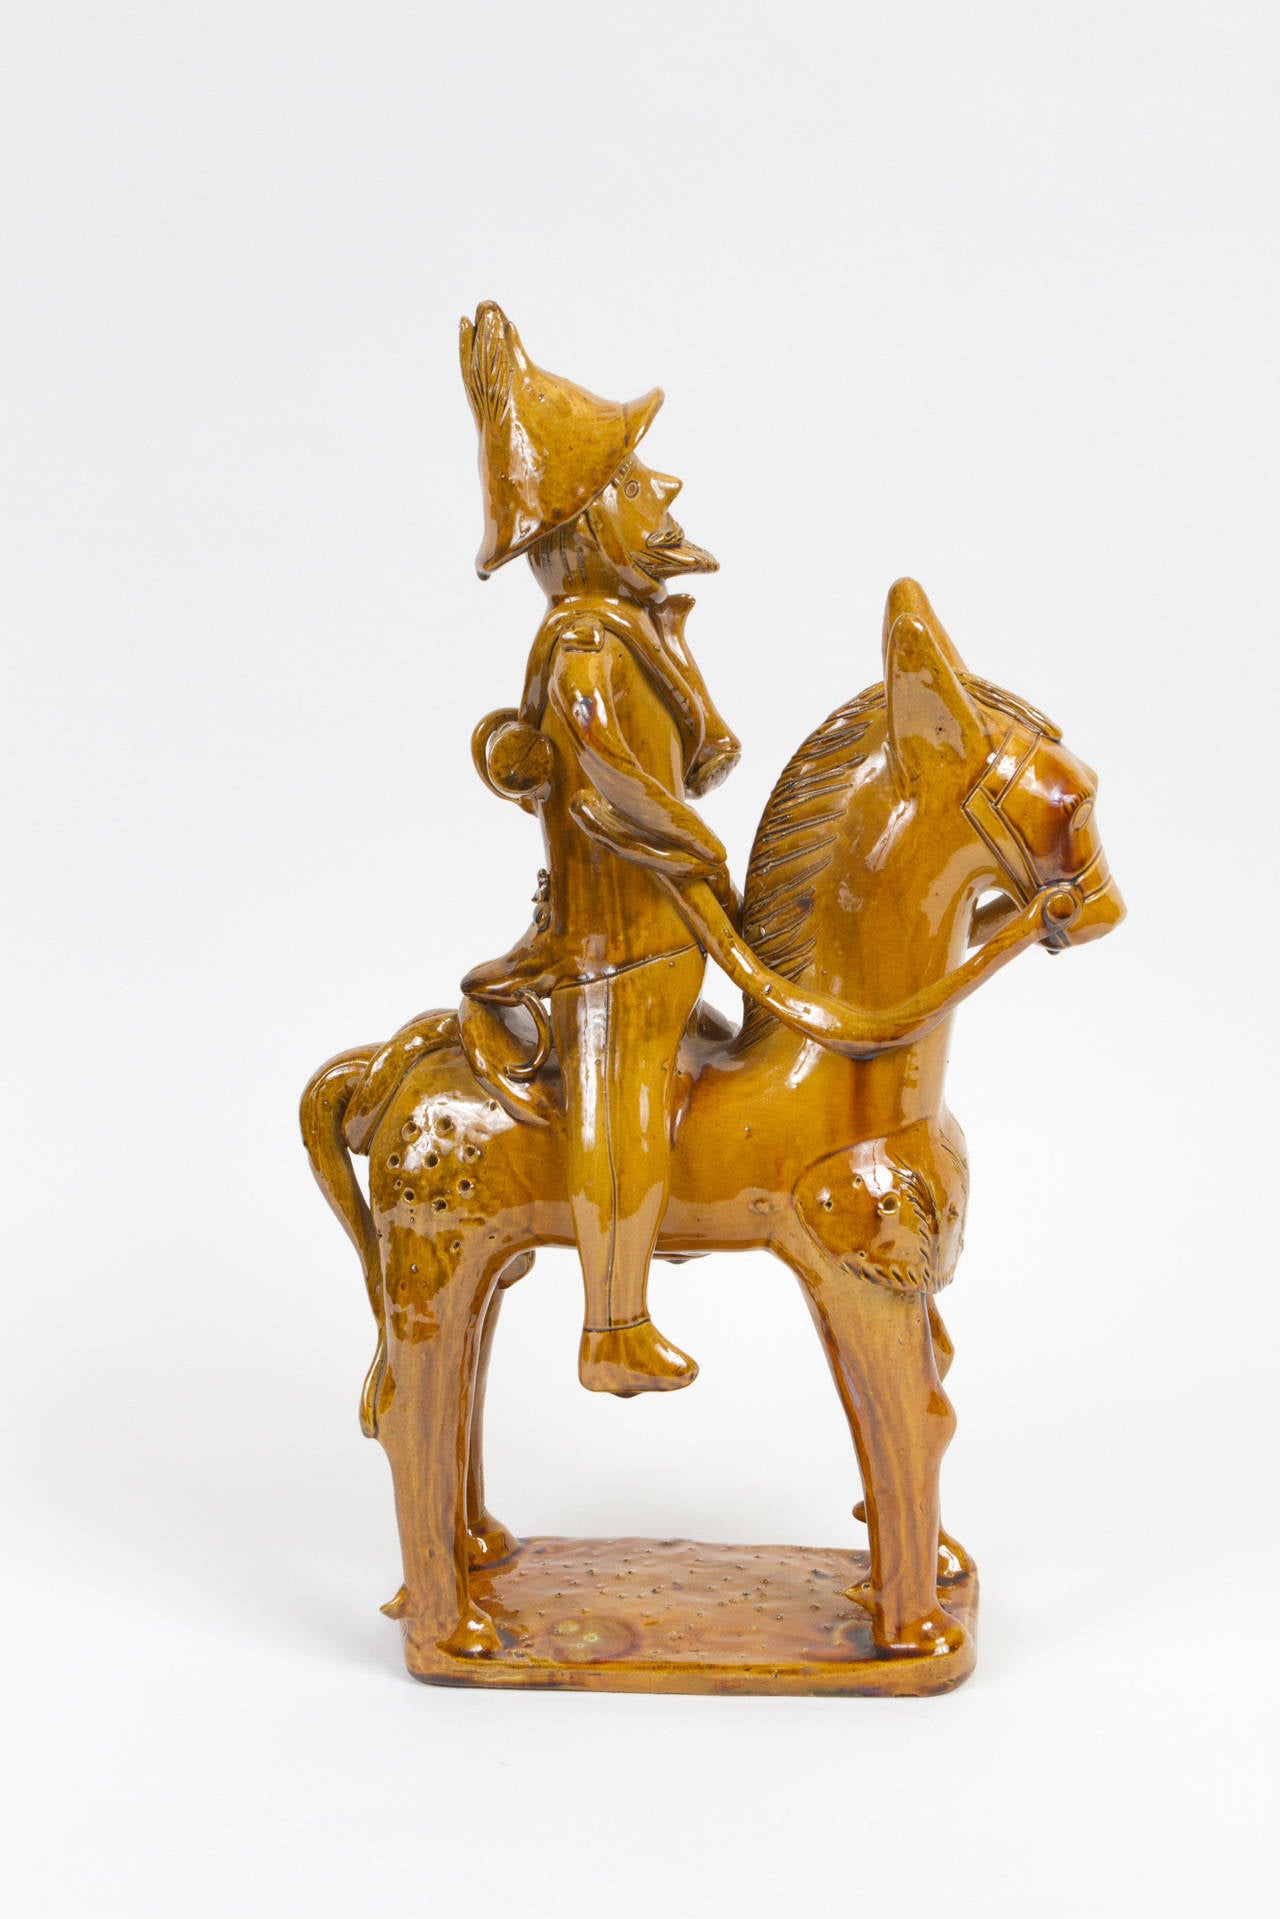 Sculpture espagnole en céramique émaillée jaune représentant Don Quichotte.